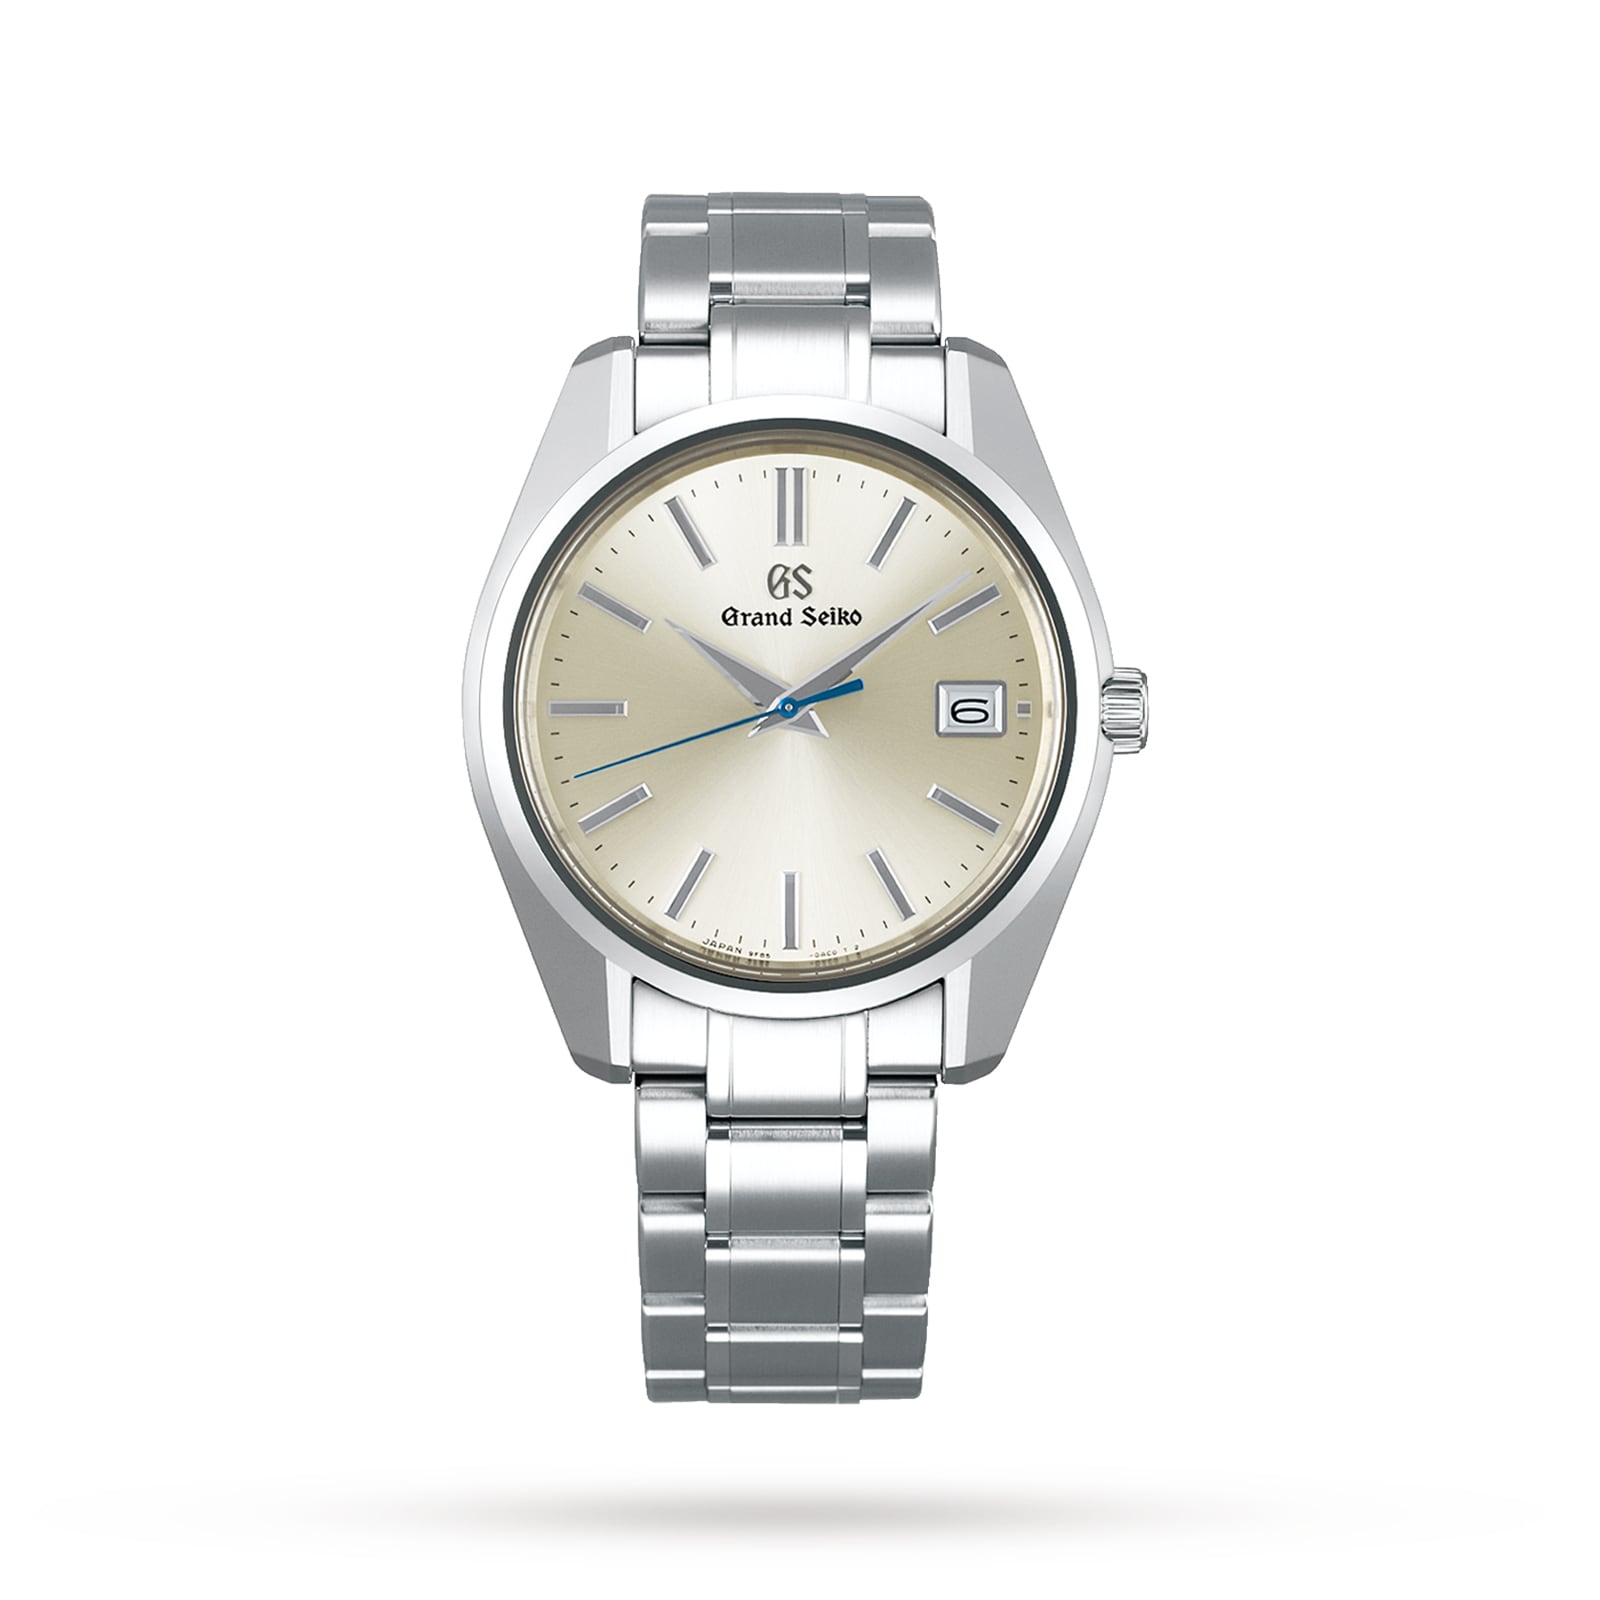 Grand Seiko Heritage SBGP001 | Watches Of Switzerland US